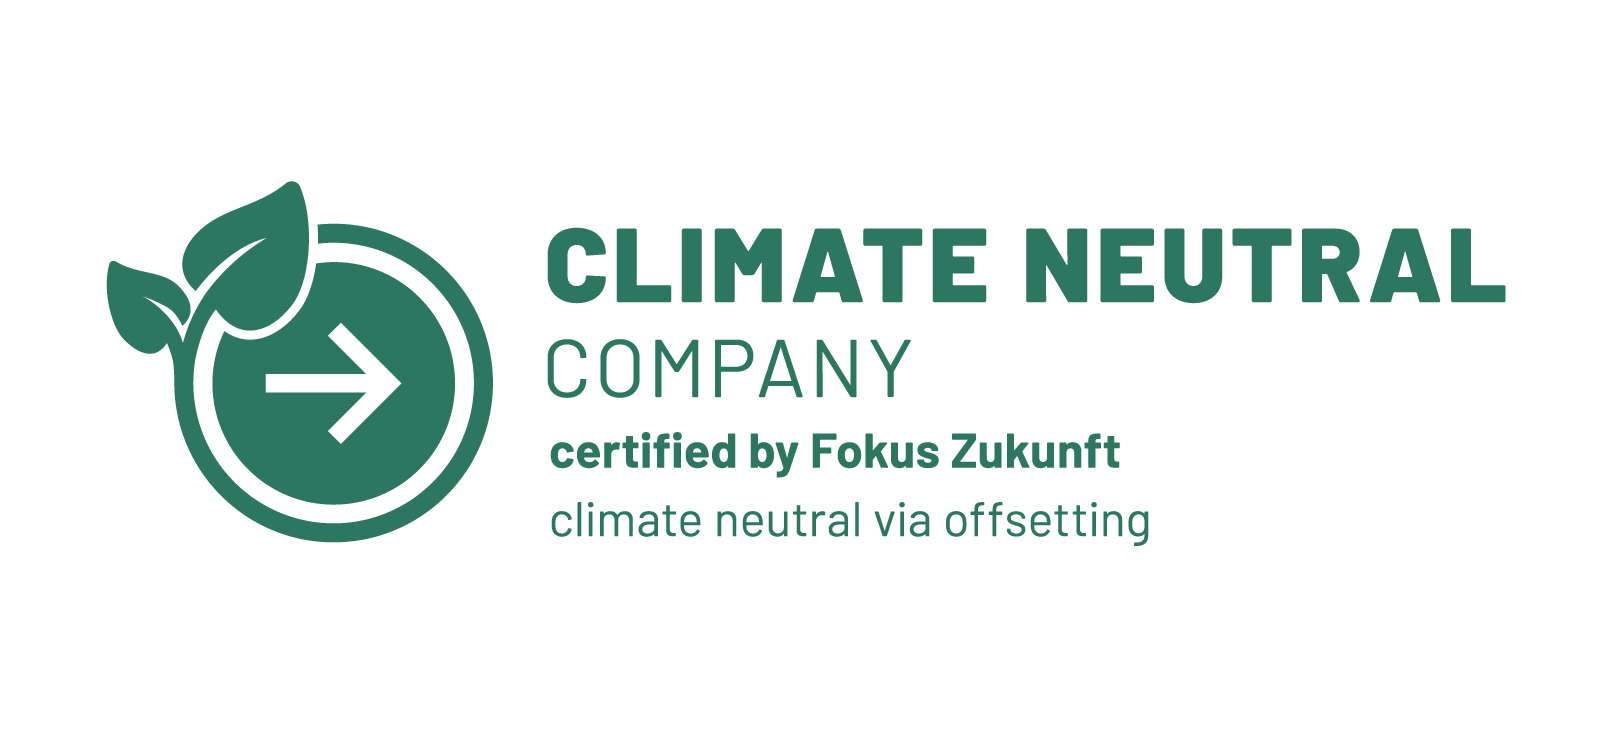 Klimaneutrales Unternehmen